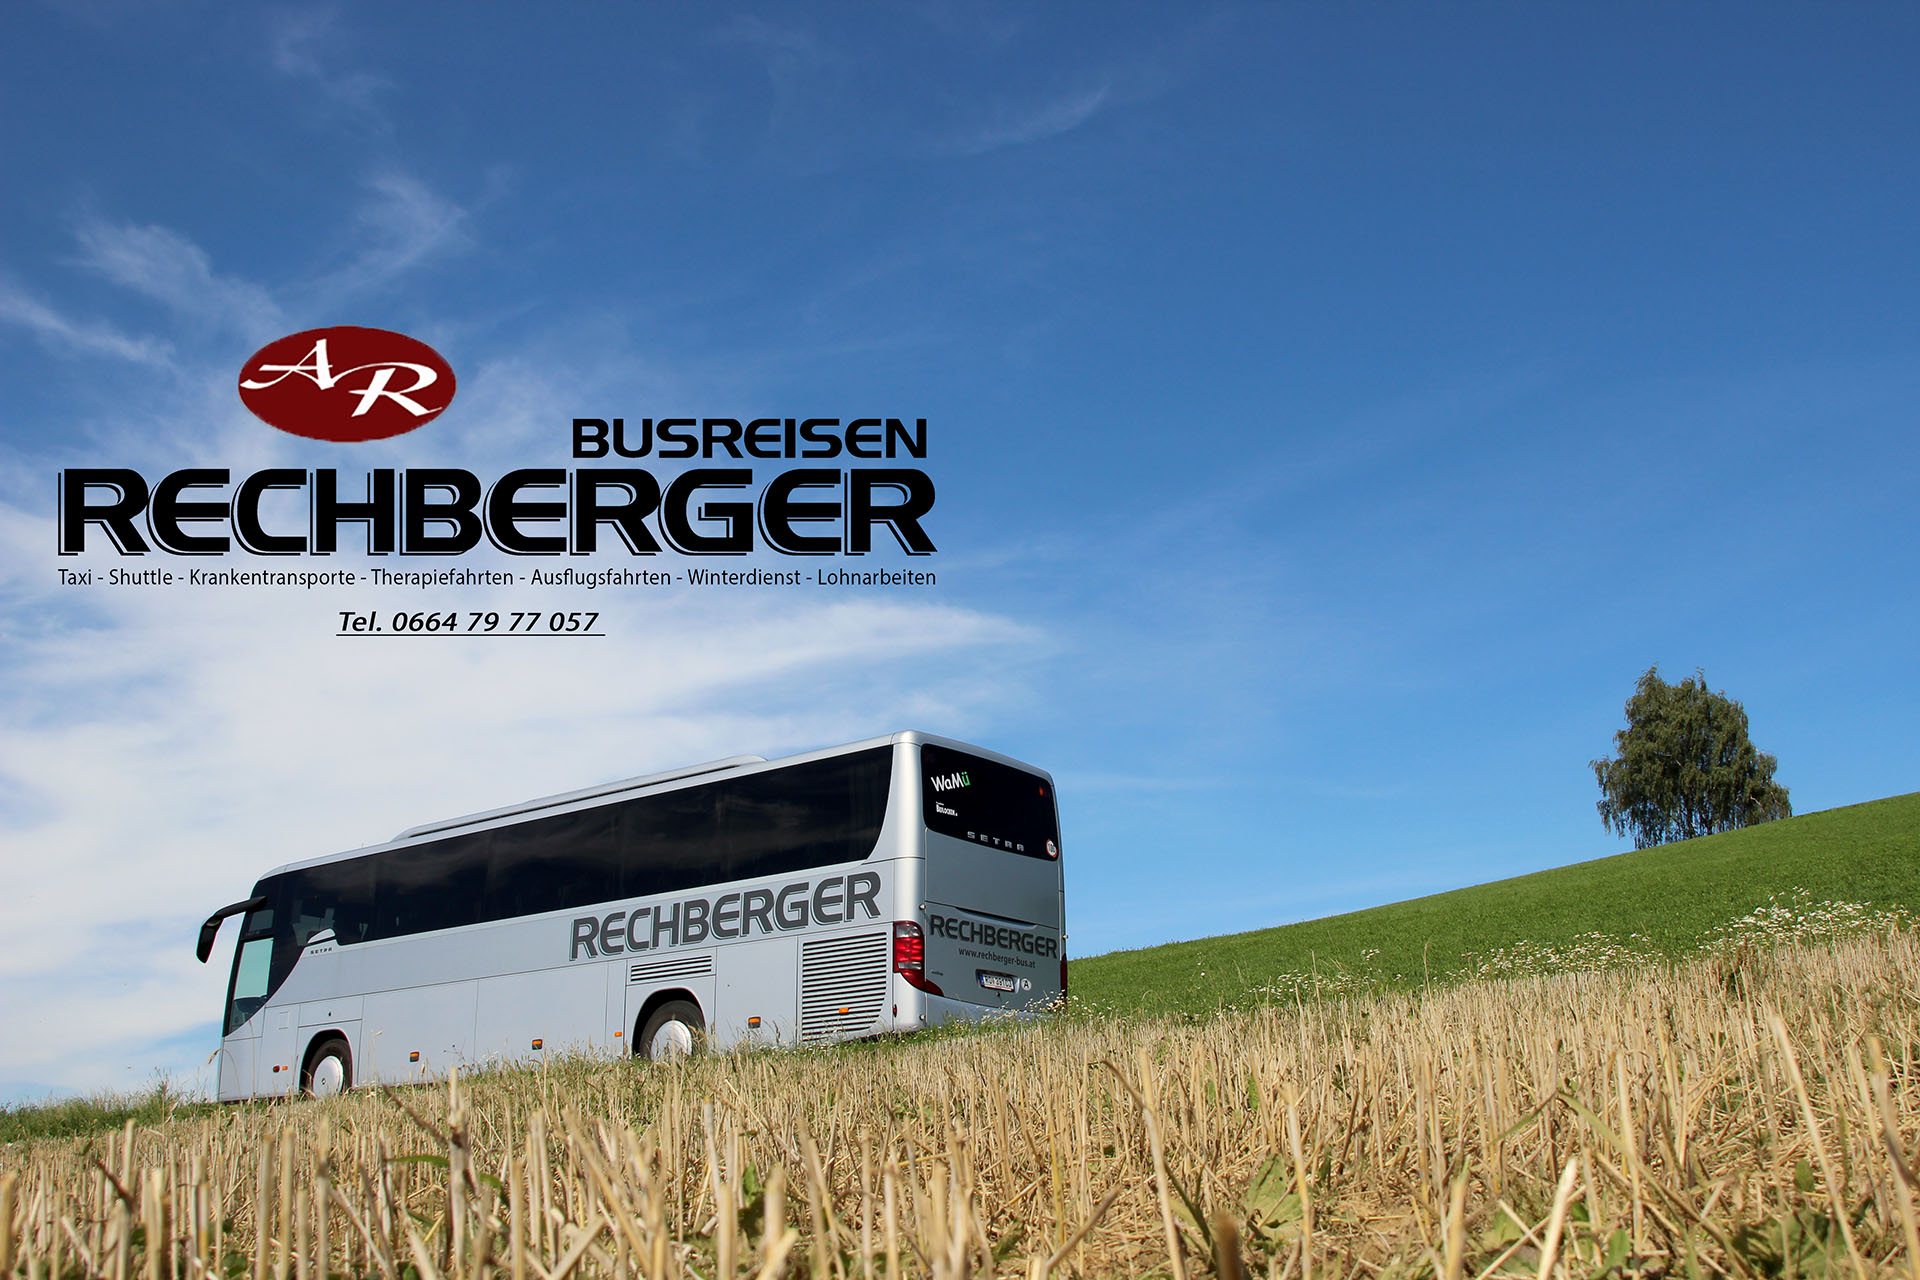 Rechberger Busreisen GmbH 